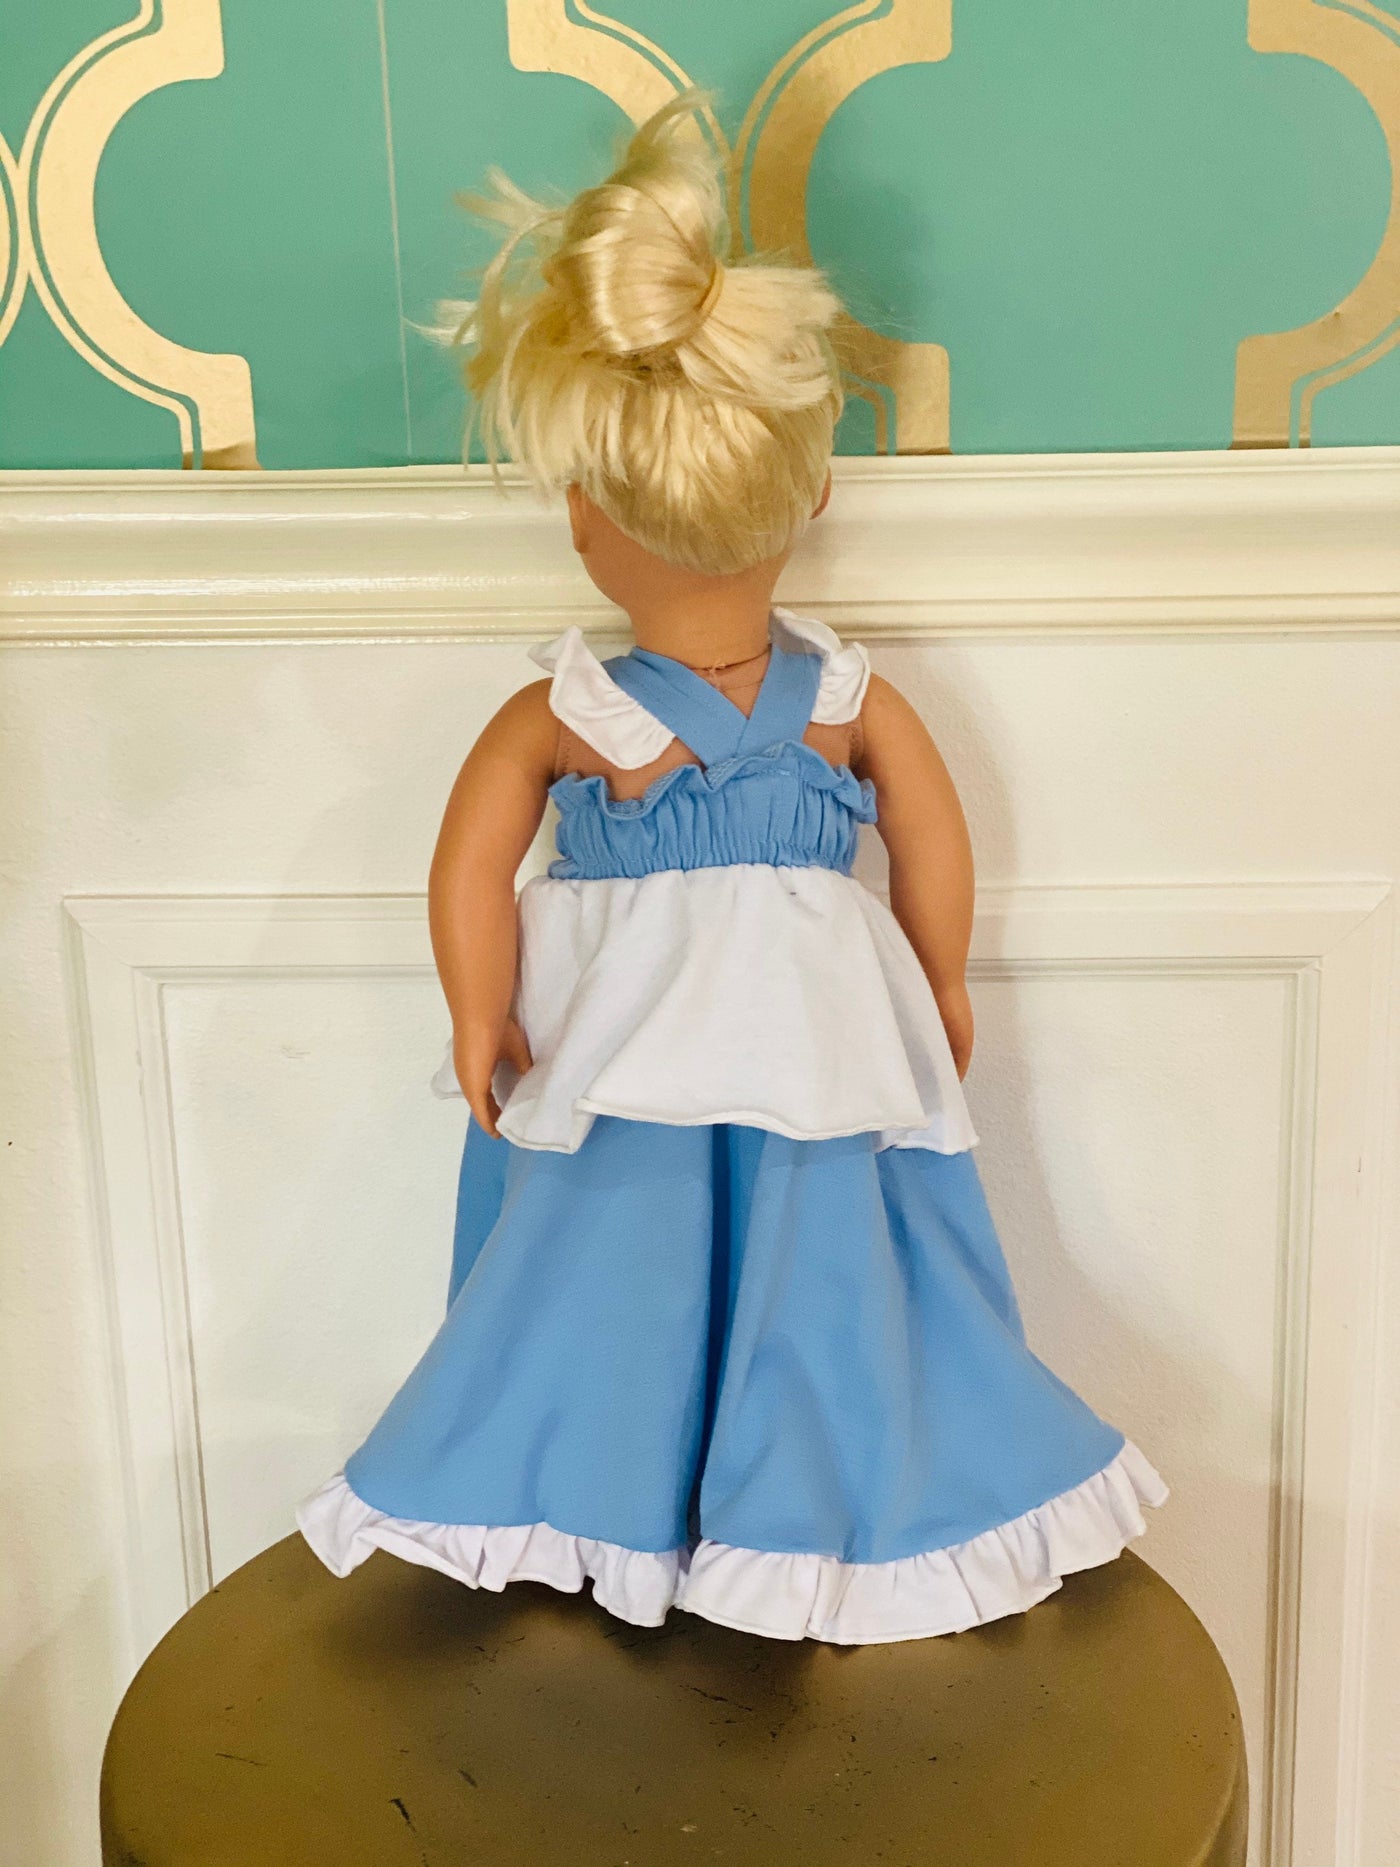 Cinderella doll dress